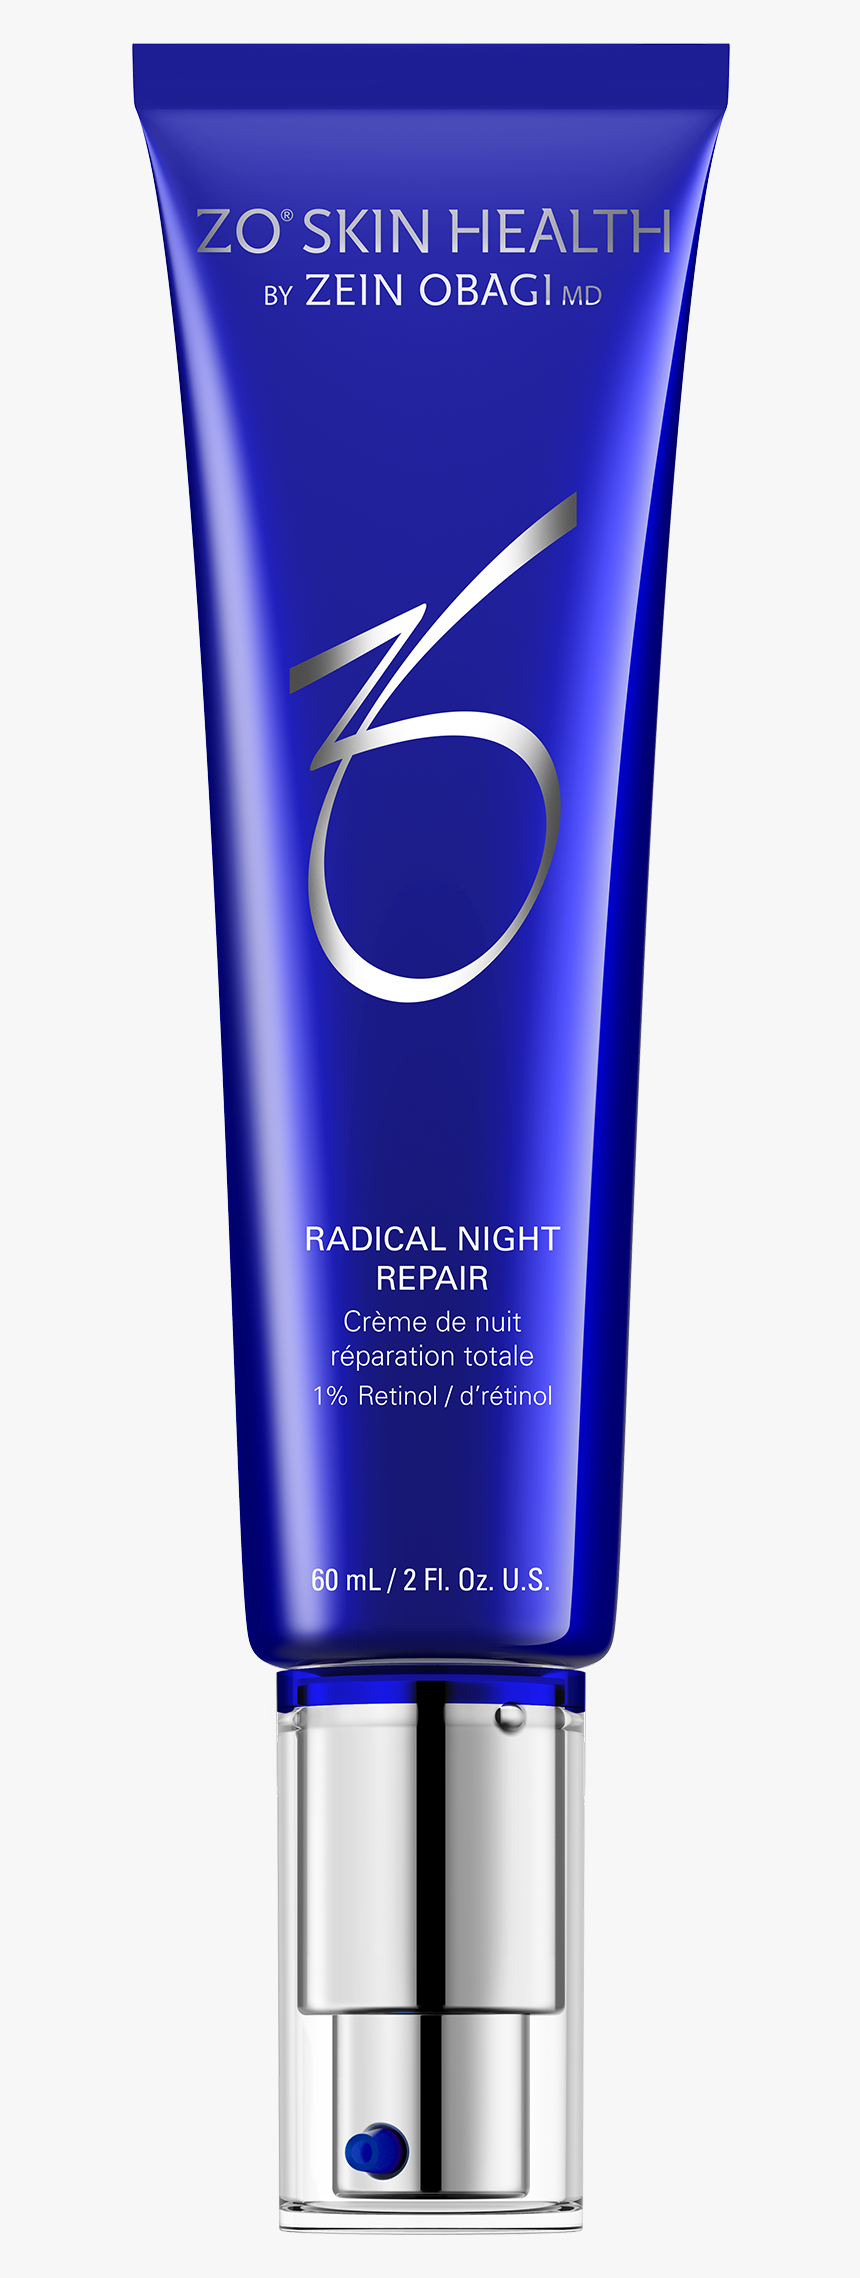 Zo Skin Health Radical Night Repair, HD Png Download, Free Download